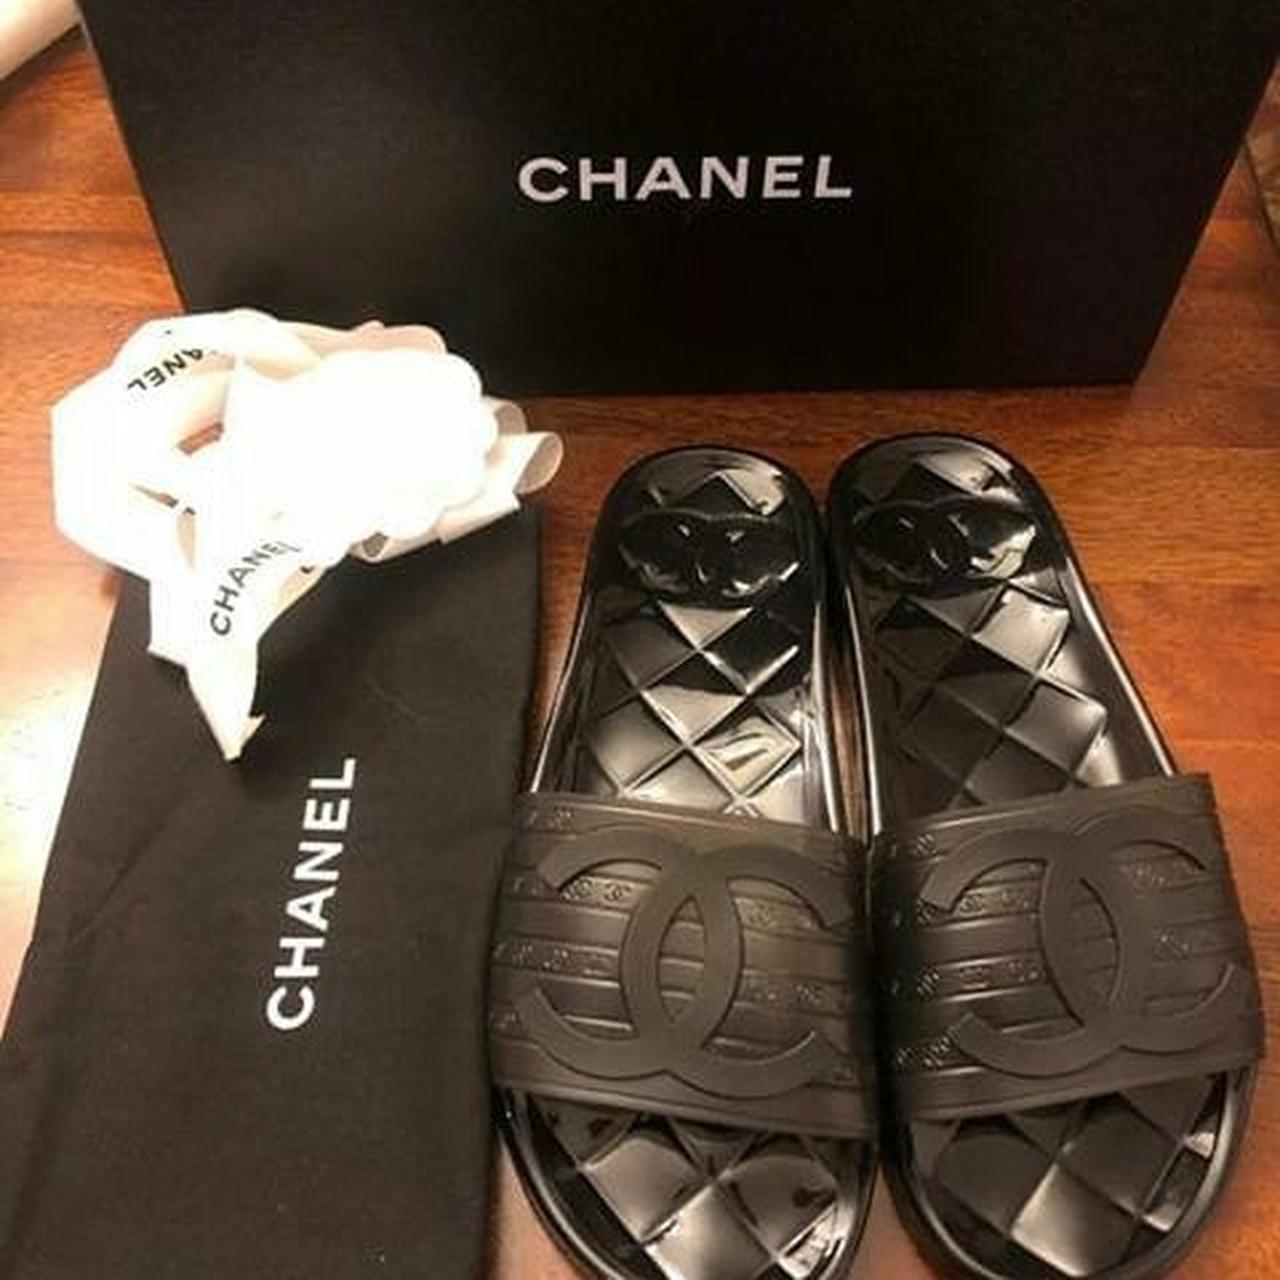 Chanel black transparent logo pool slides worn once